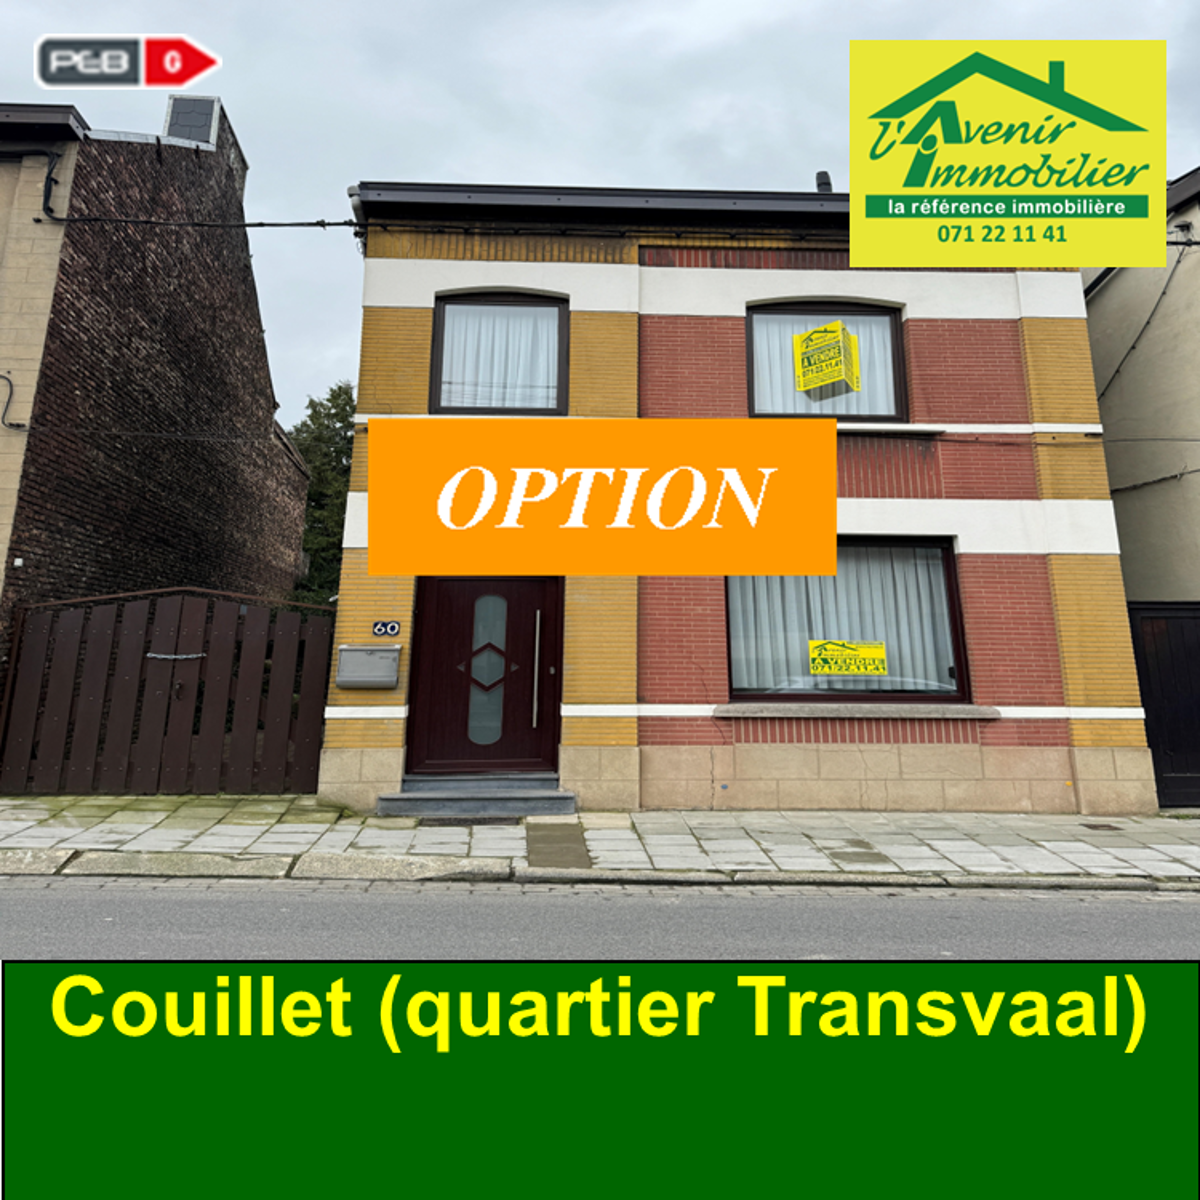 Maison à vendre à Couillet 6010 150000.00€ 3 chambres m² - annonce 1348687